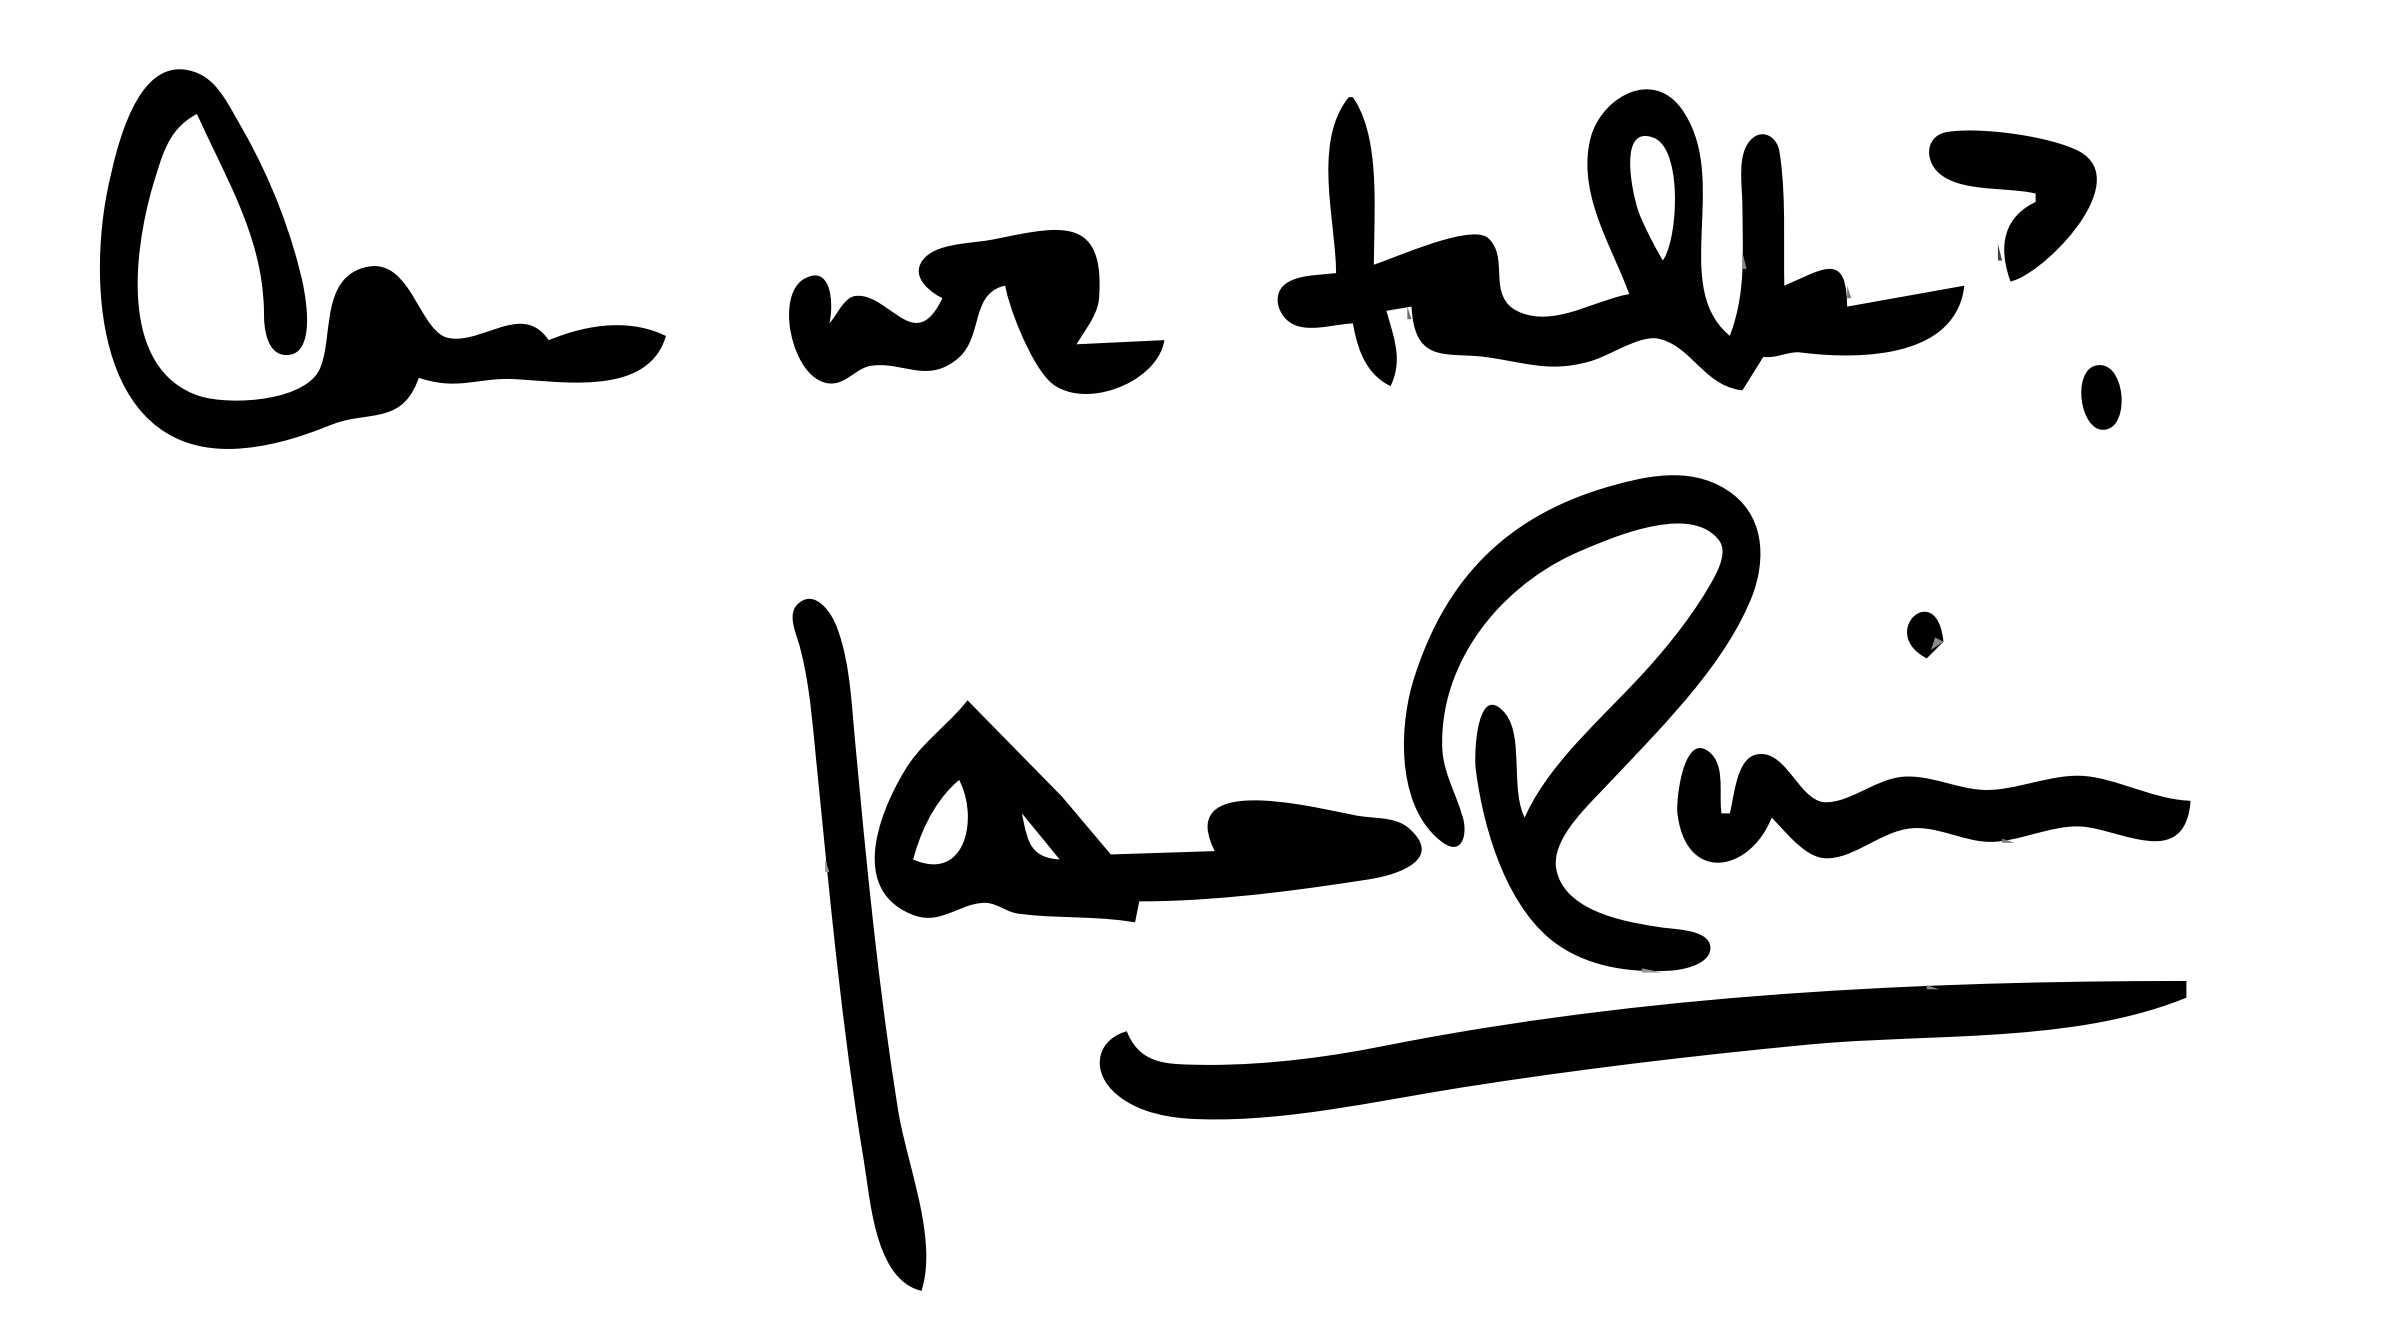 Joan River S Signature By Wanglizhong